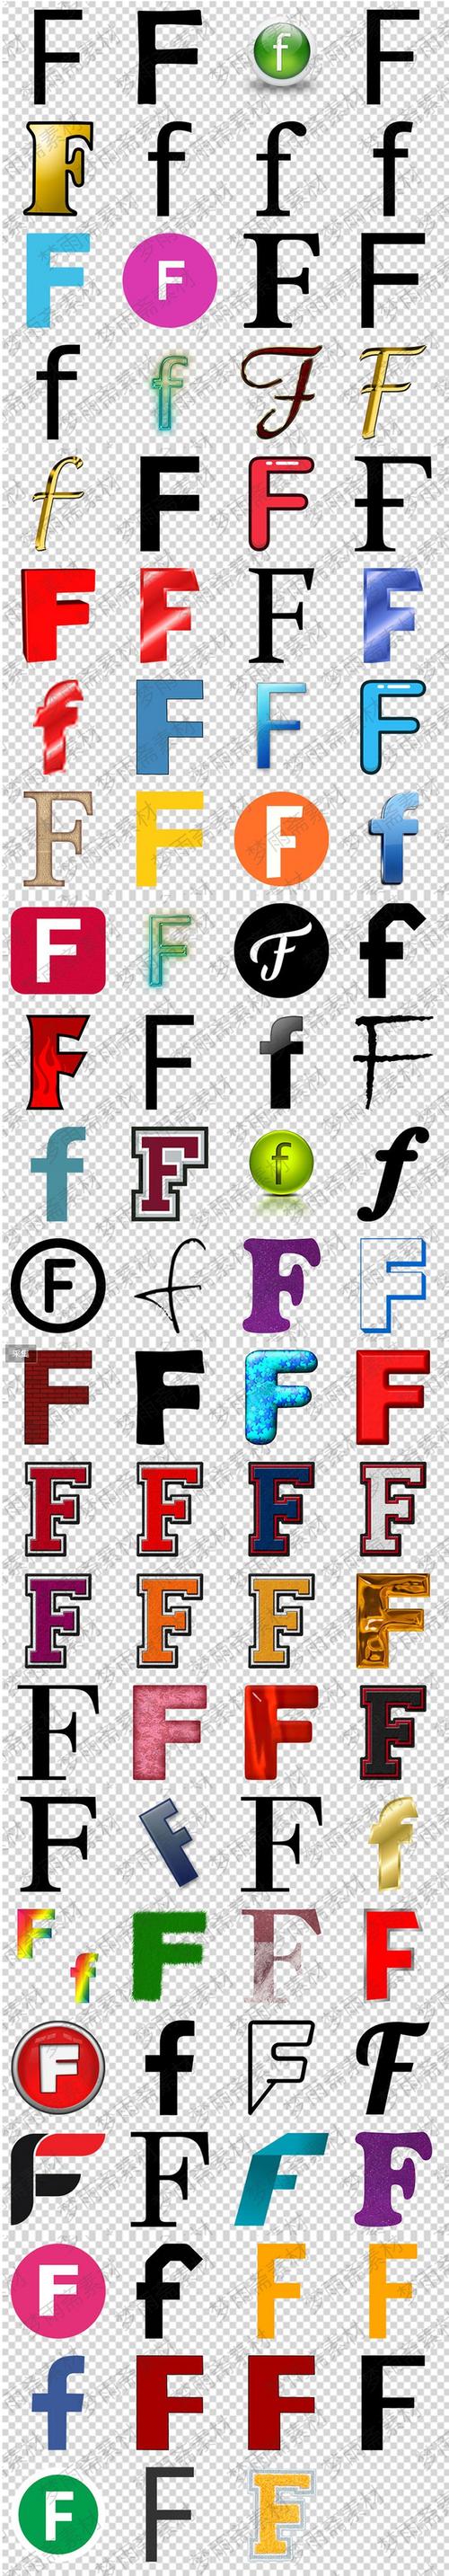 英文字母f符号图标png格式免抠元素透明底图片设计素材淘宝网